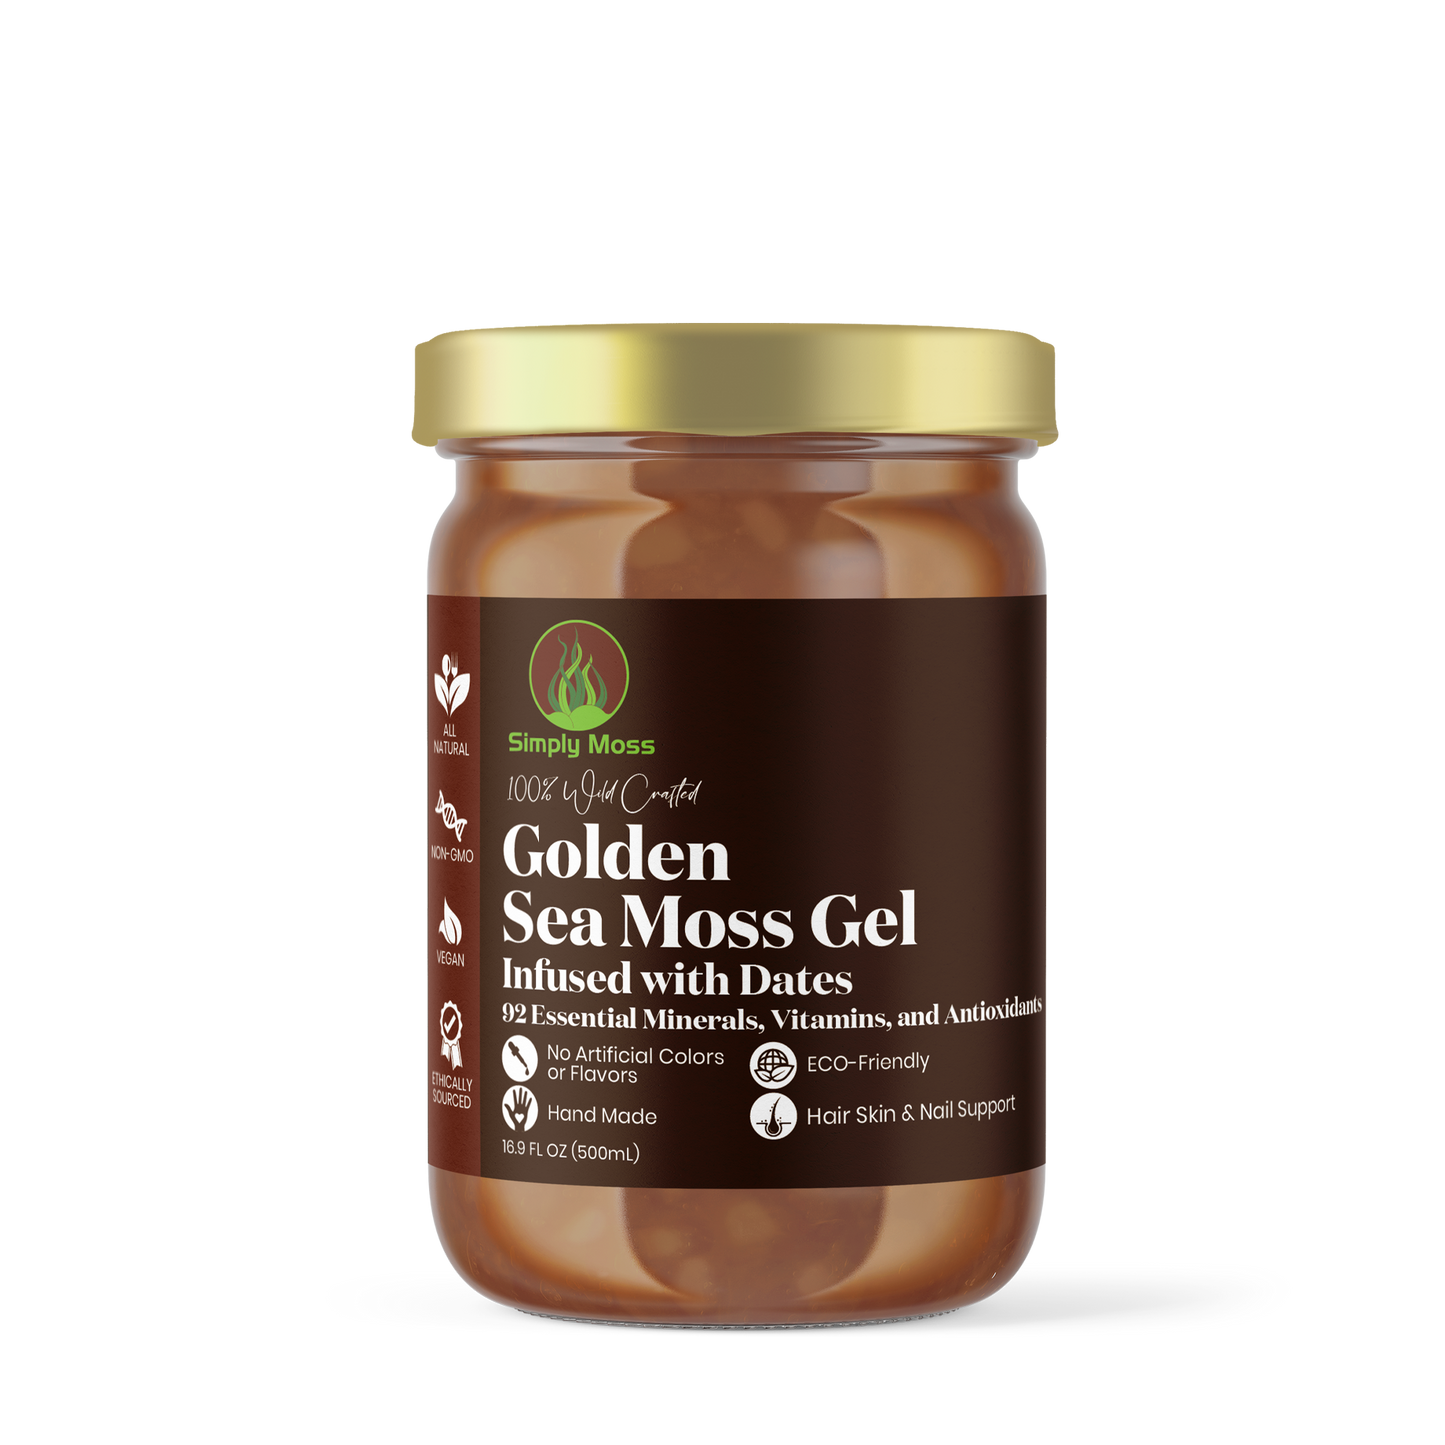 Golden Sea Moss Gel & dates 500